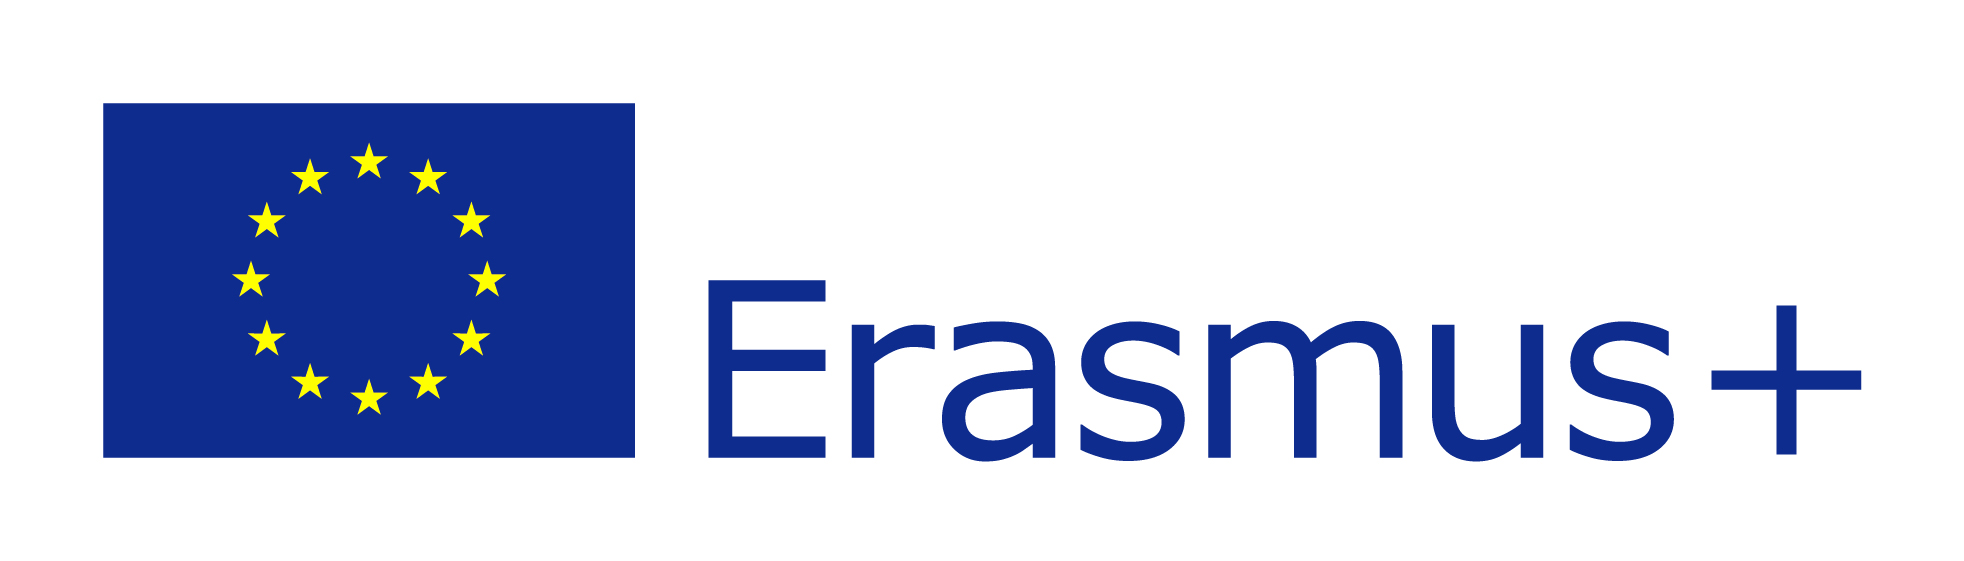 EU flag Erasmus vect